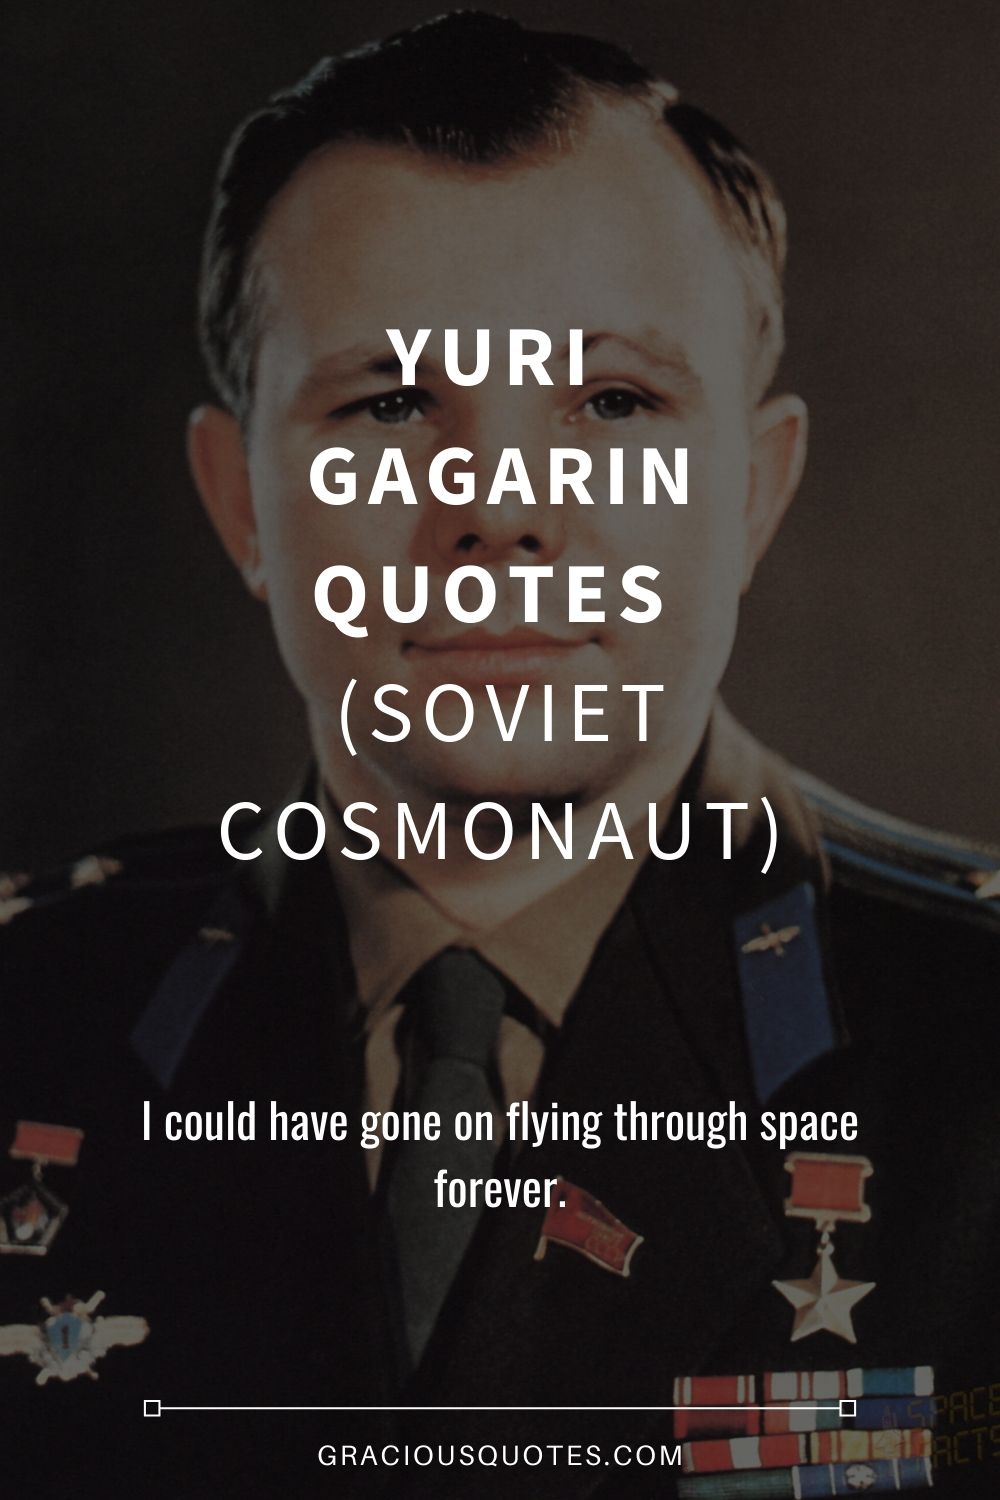 Yuri Gagarin Quotes (SOVIET COSMONAUT) - Gracious Quotes